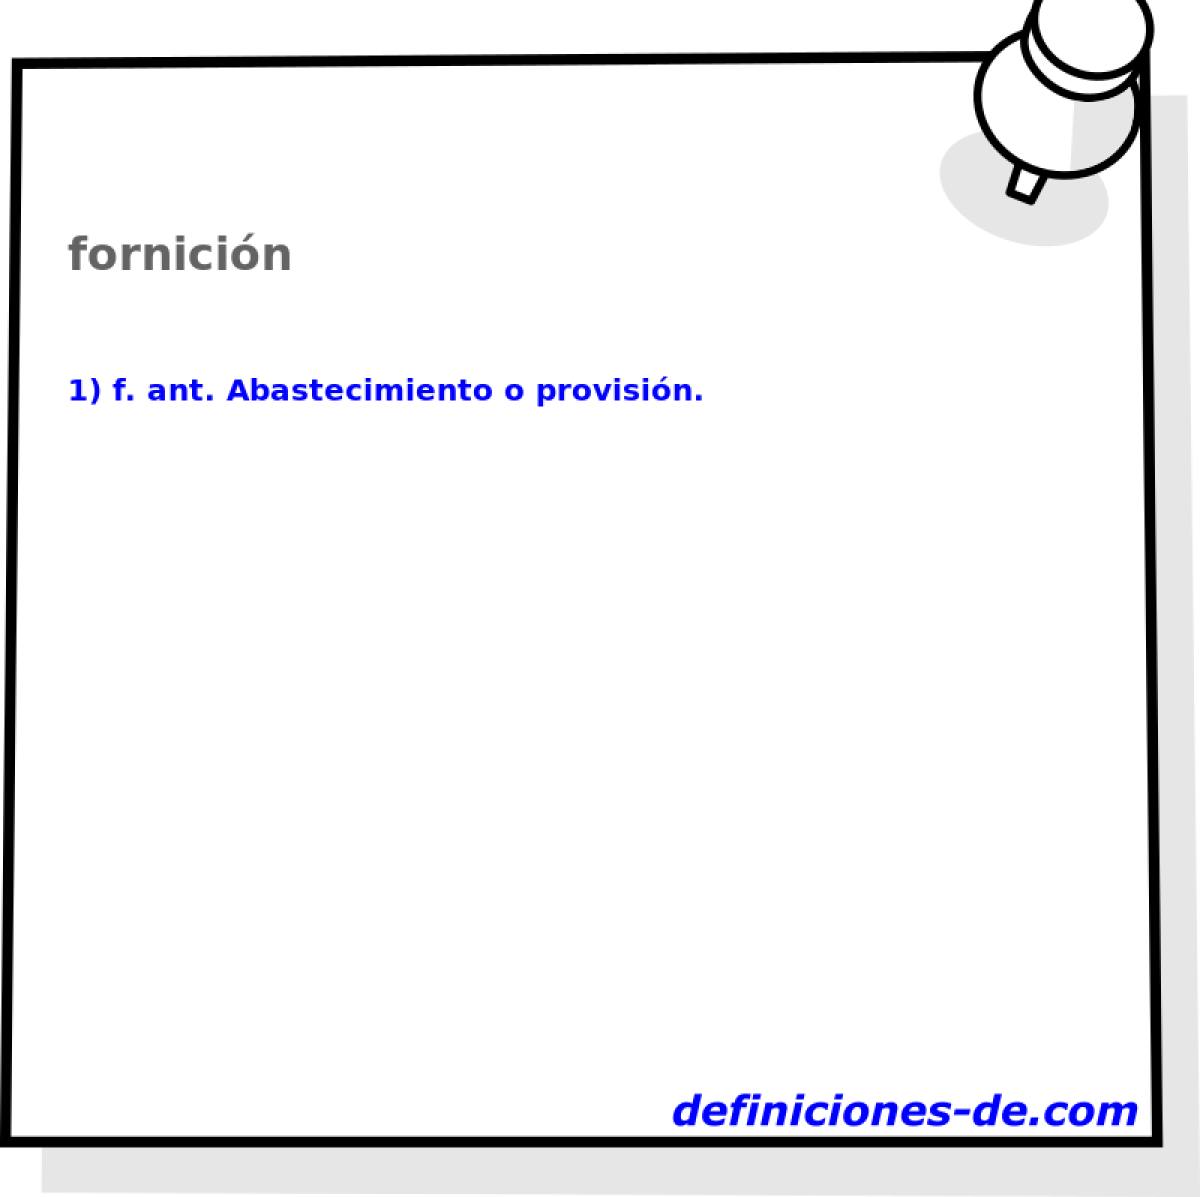 fornicin 